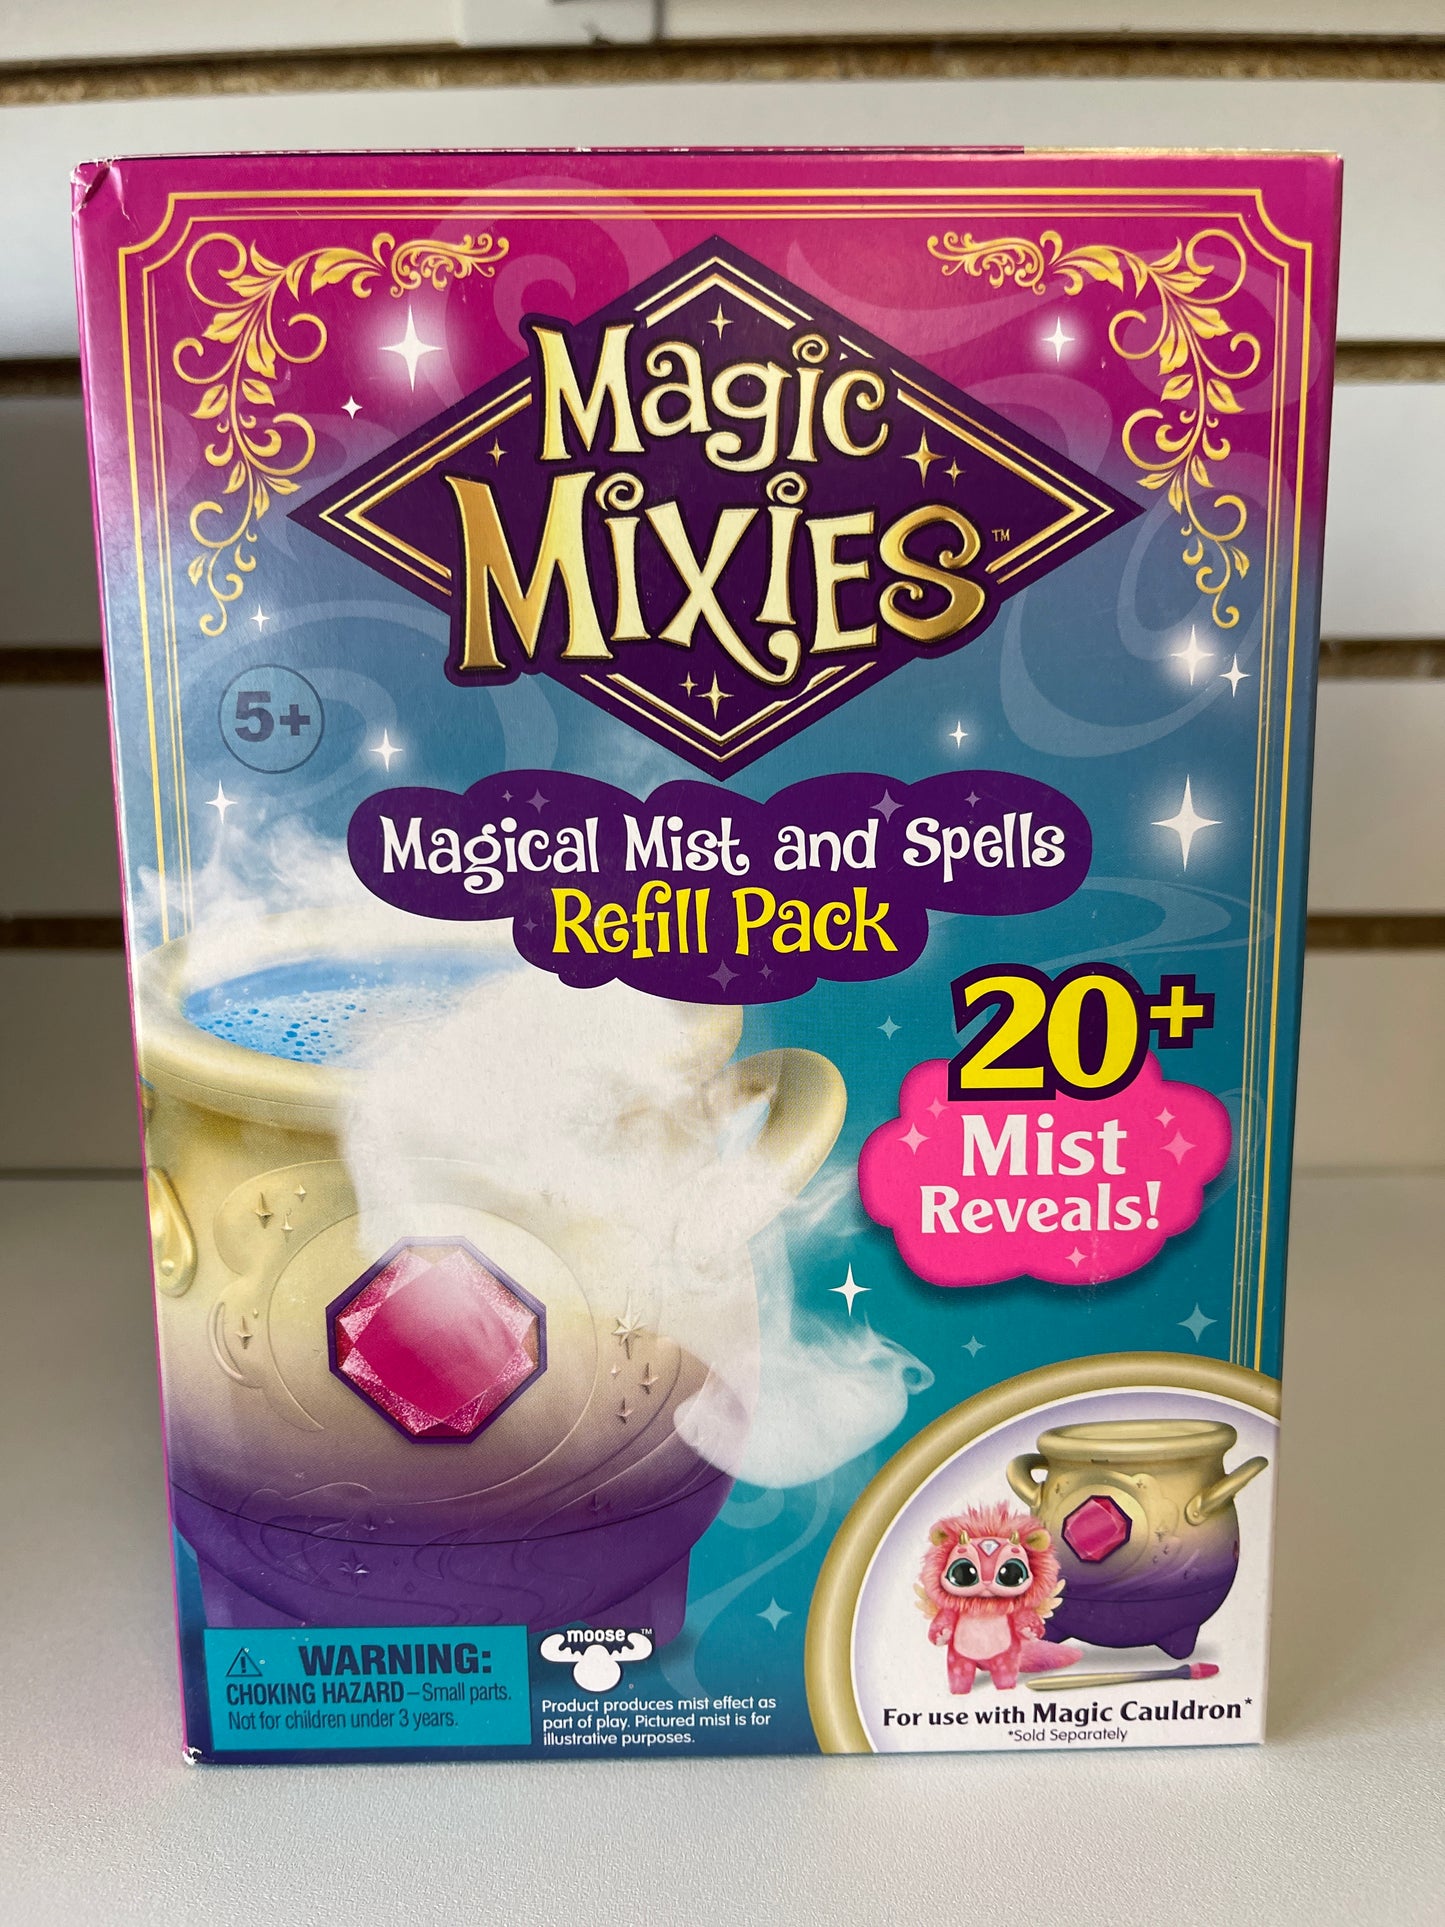 Magic Mixies refill